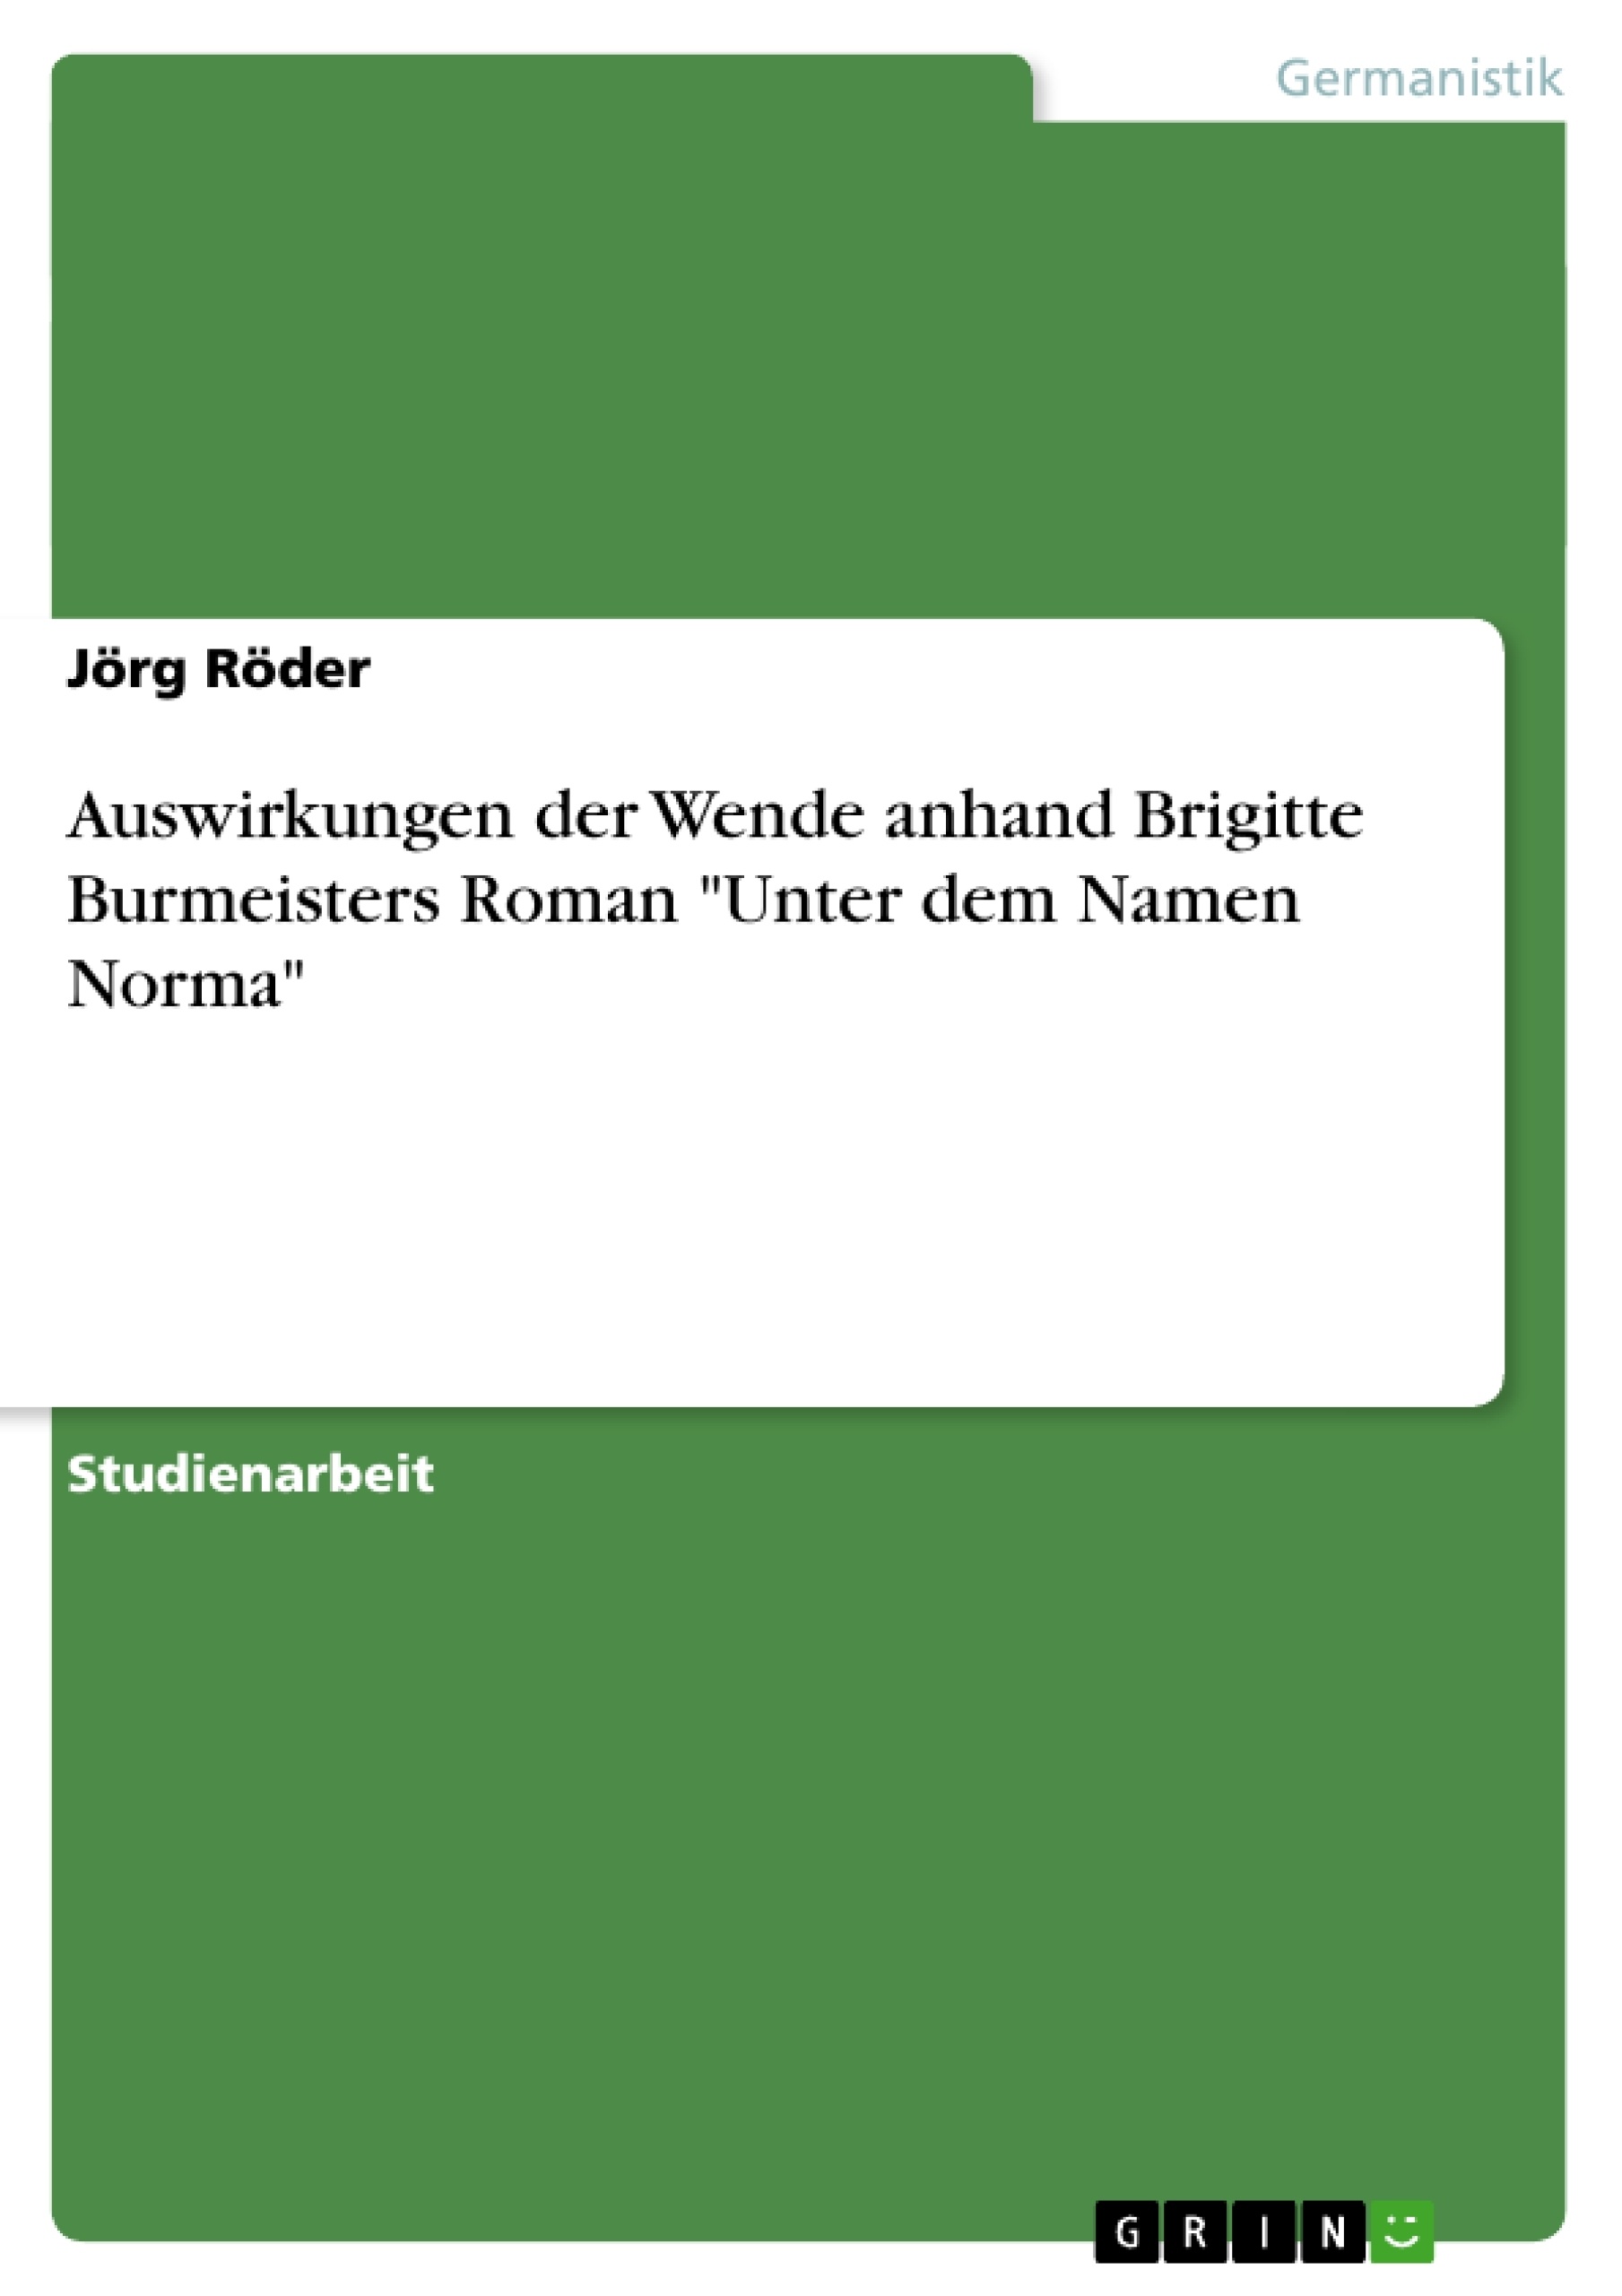 Titre: Auswirkungen der Wende anhand Brigitte Burmeisters Roman "Unter dem Namen Norma"